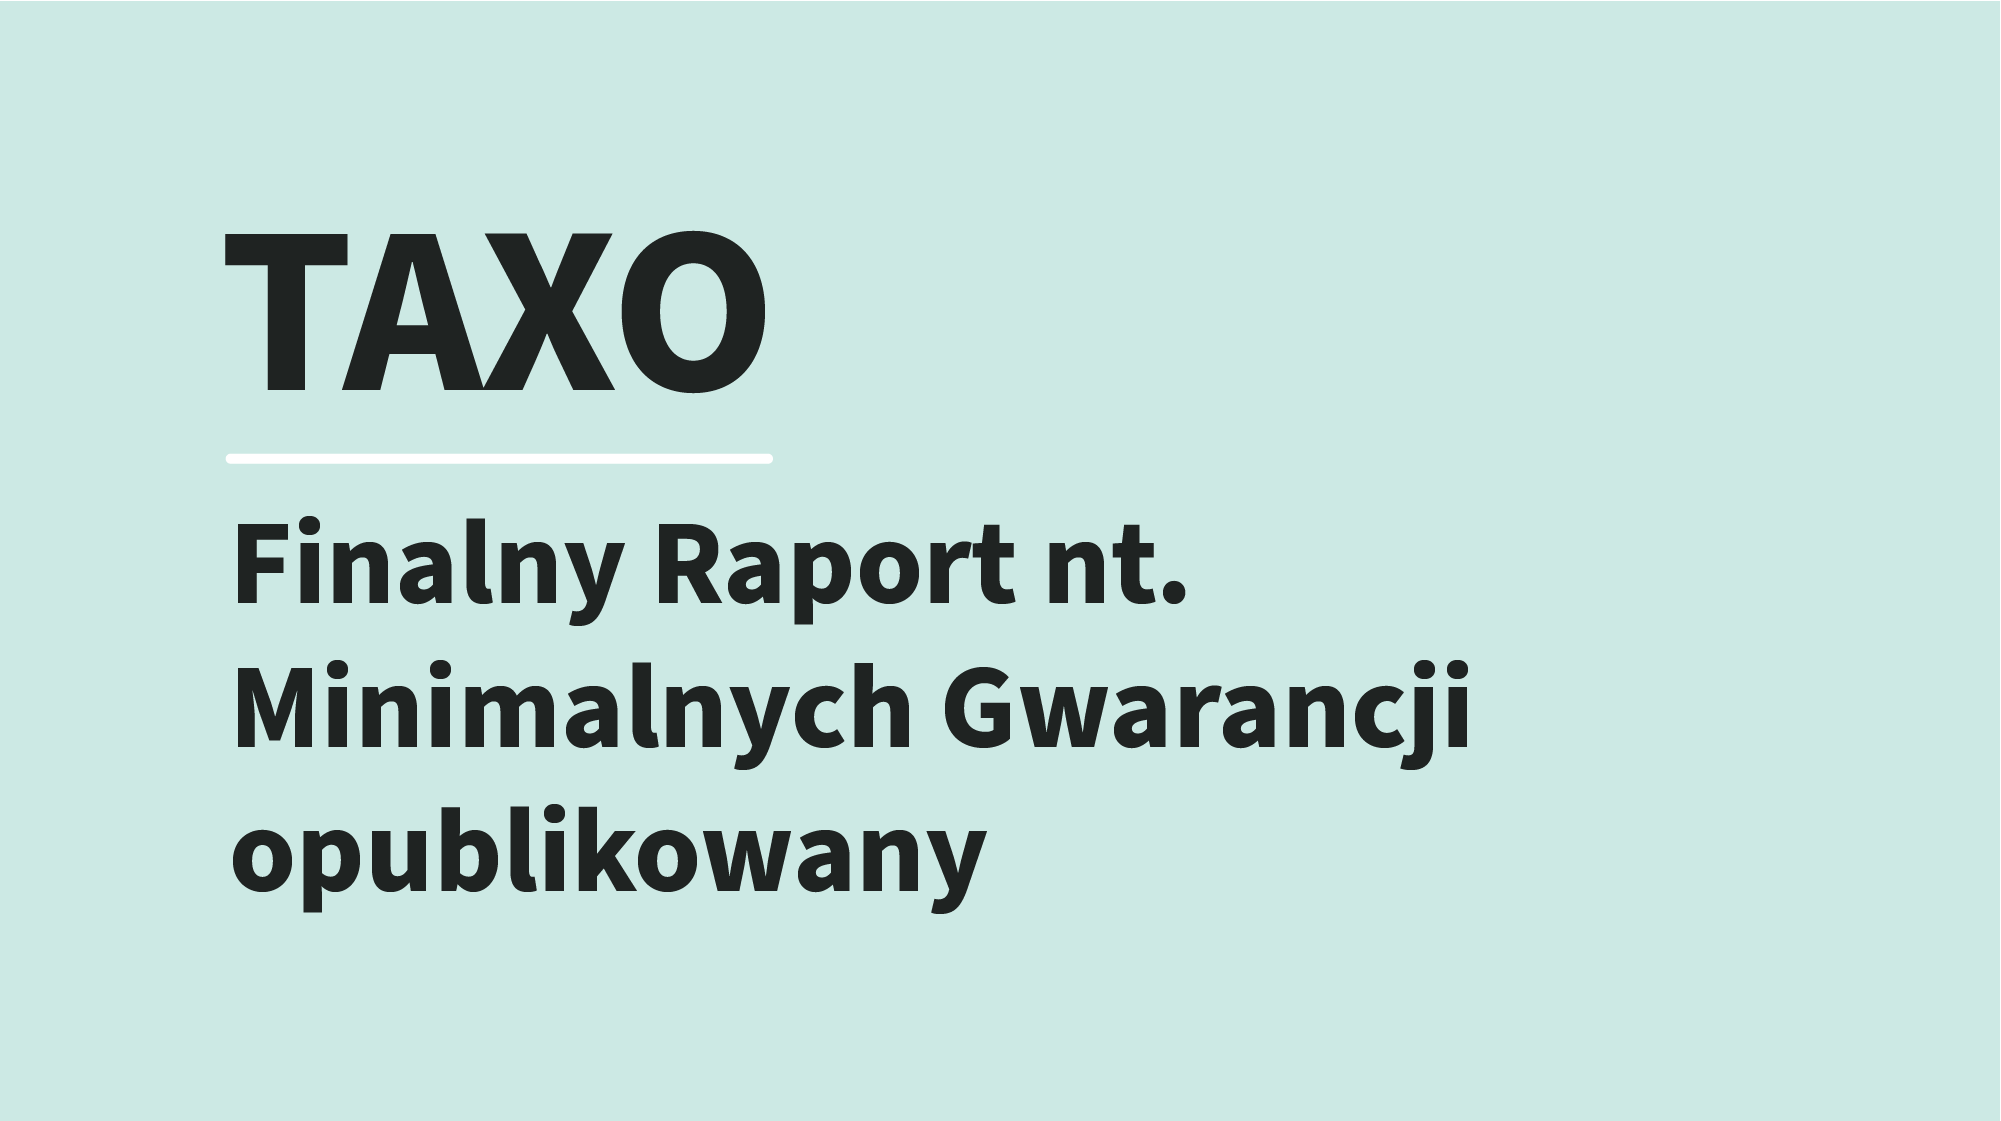 Taxo - Finalny Raport nt. Minimalnych Gwarancji opublikowany